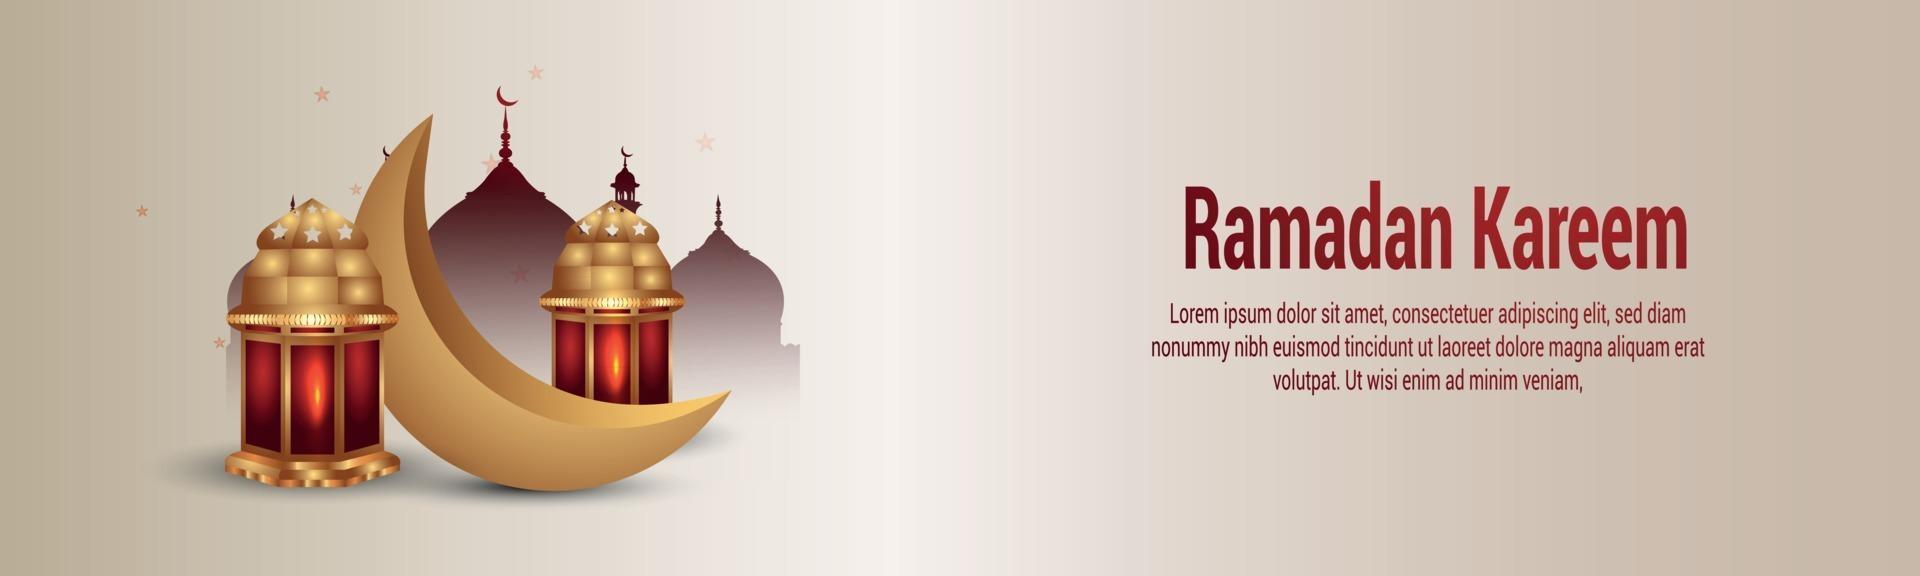 Arabische islamitische lantaarn van ramadan kareem-banner of koptekst vector